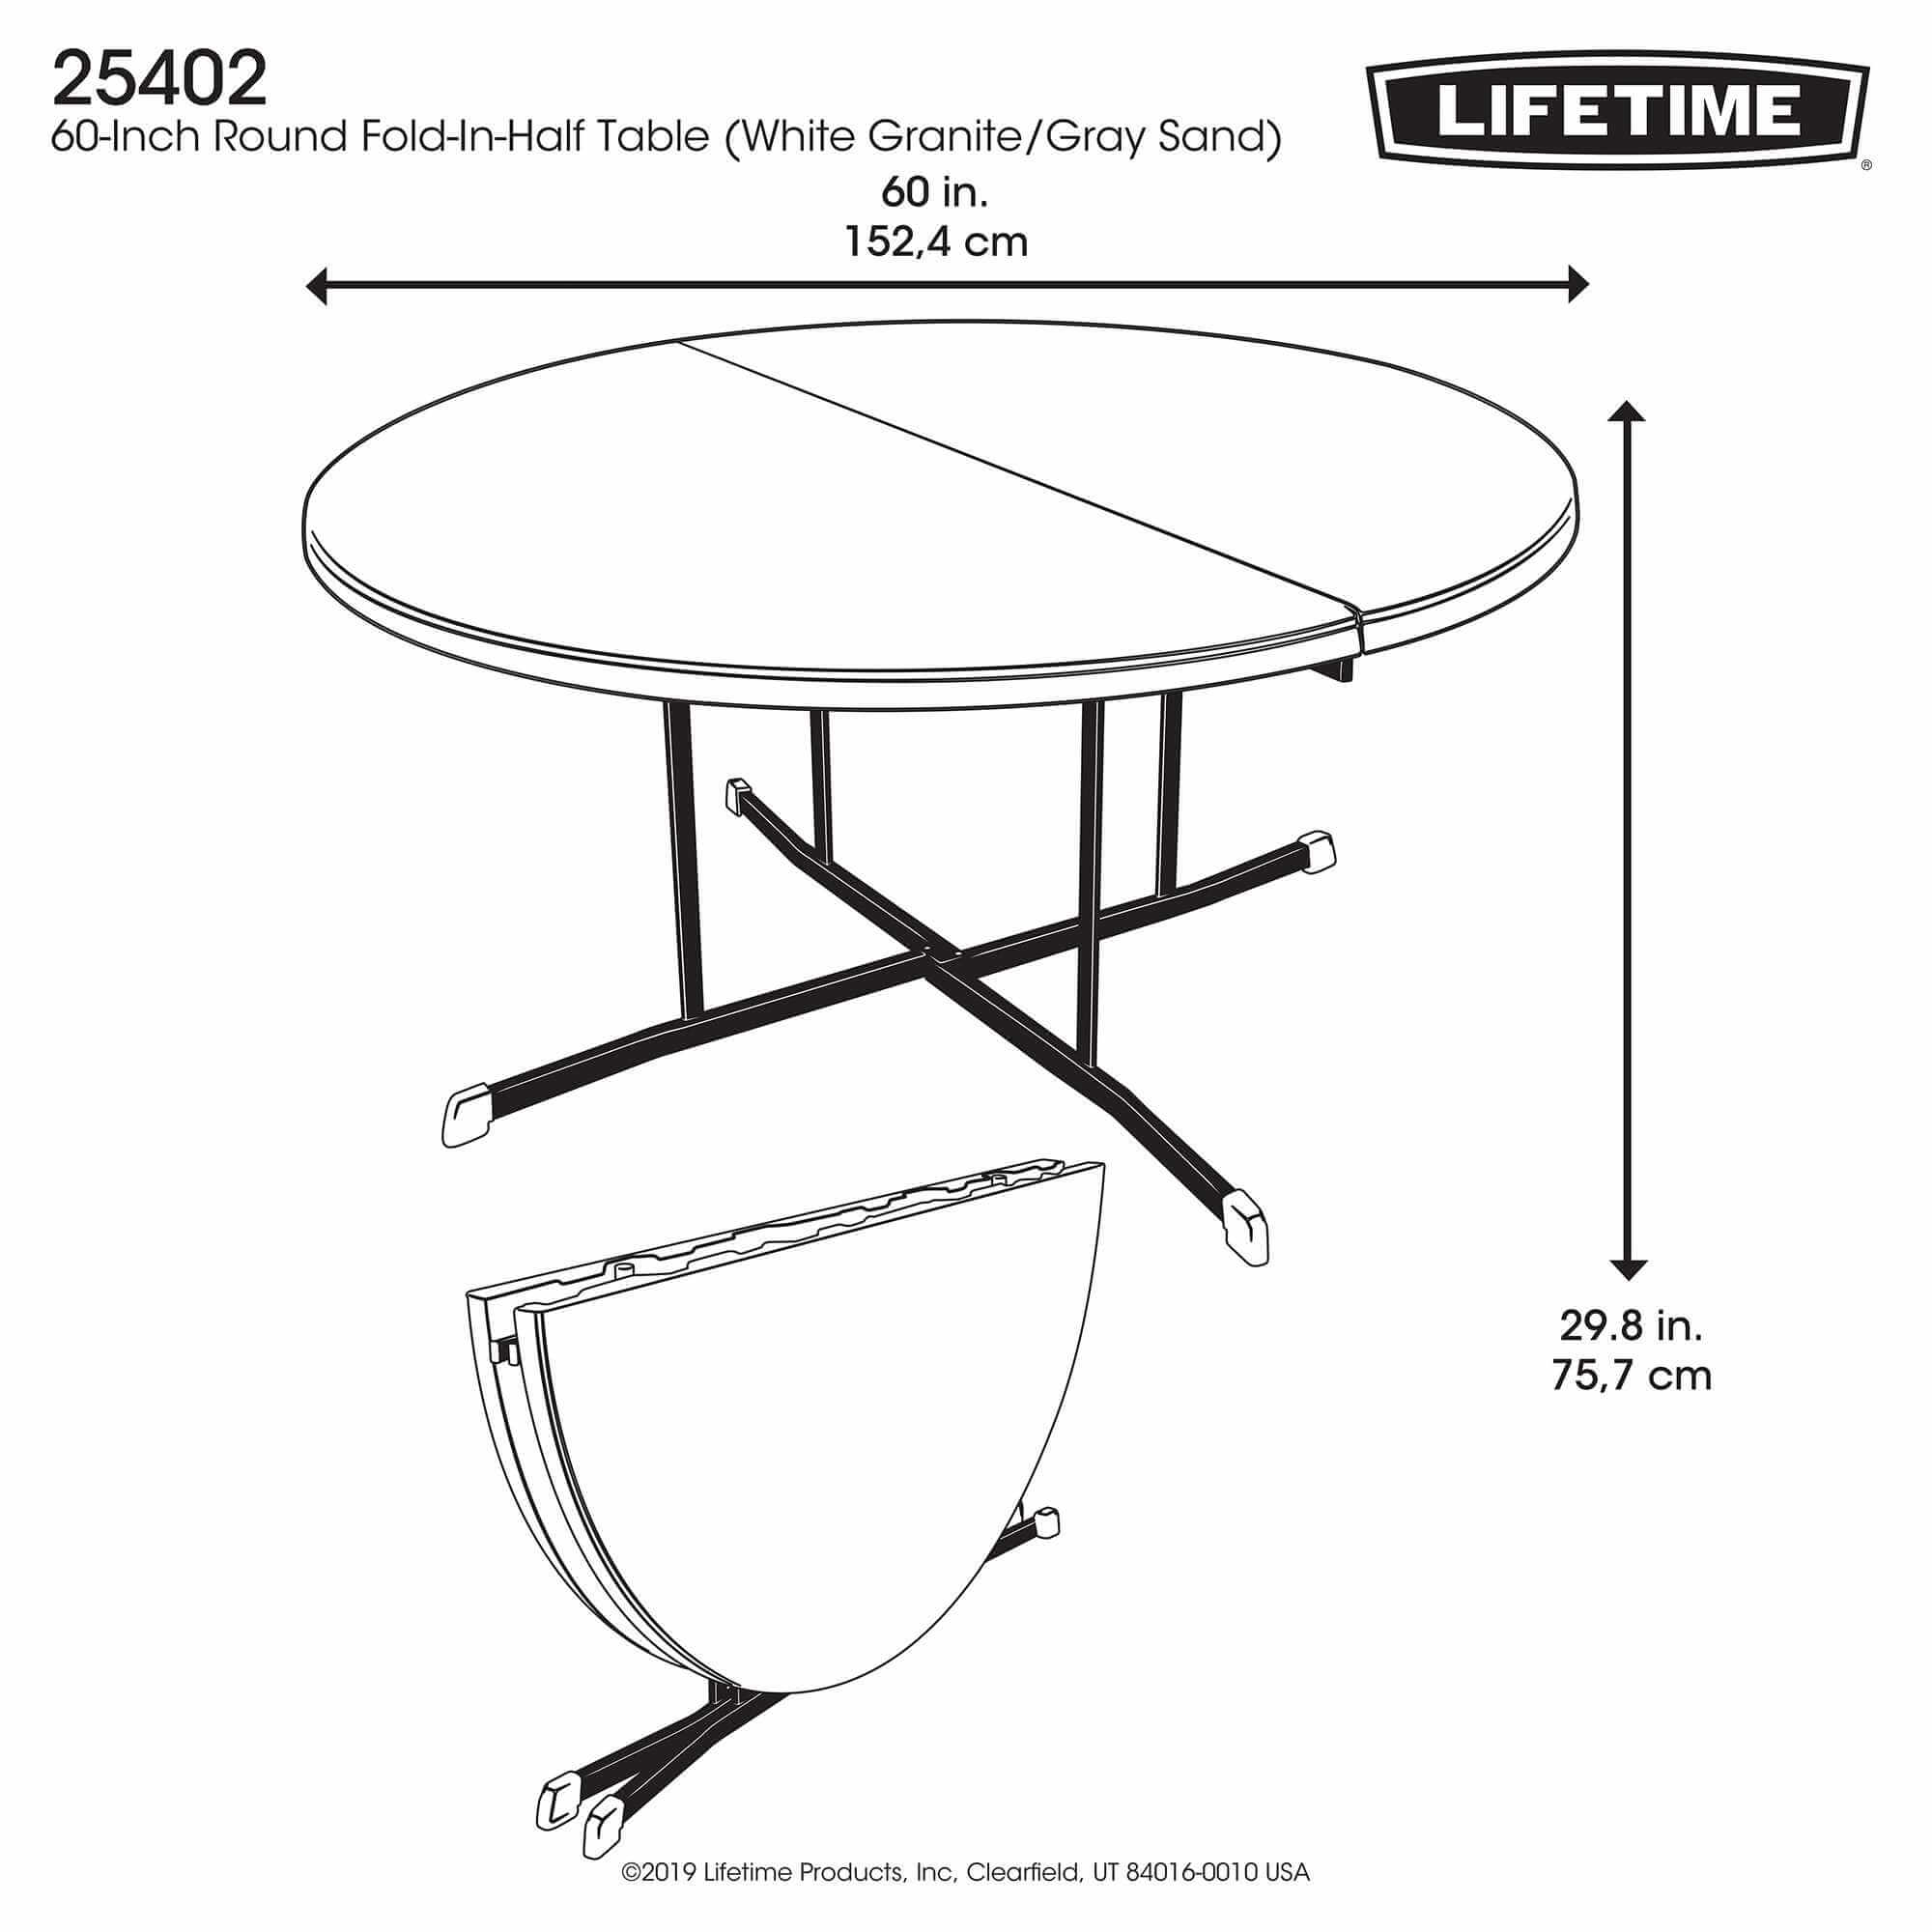 Table pliable en 2 ronde dia 152cm / 8 personnes